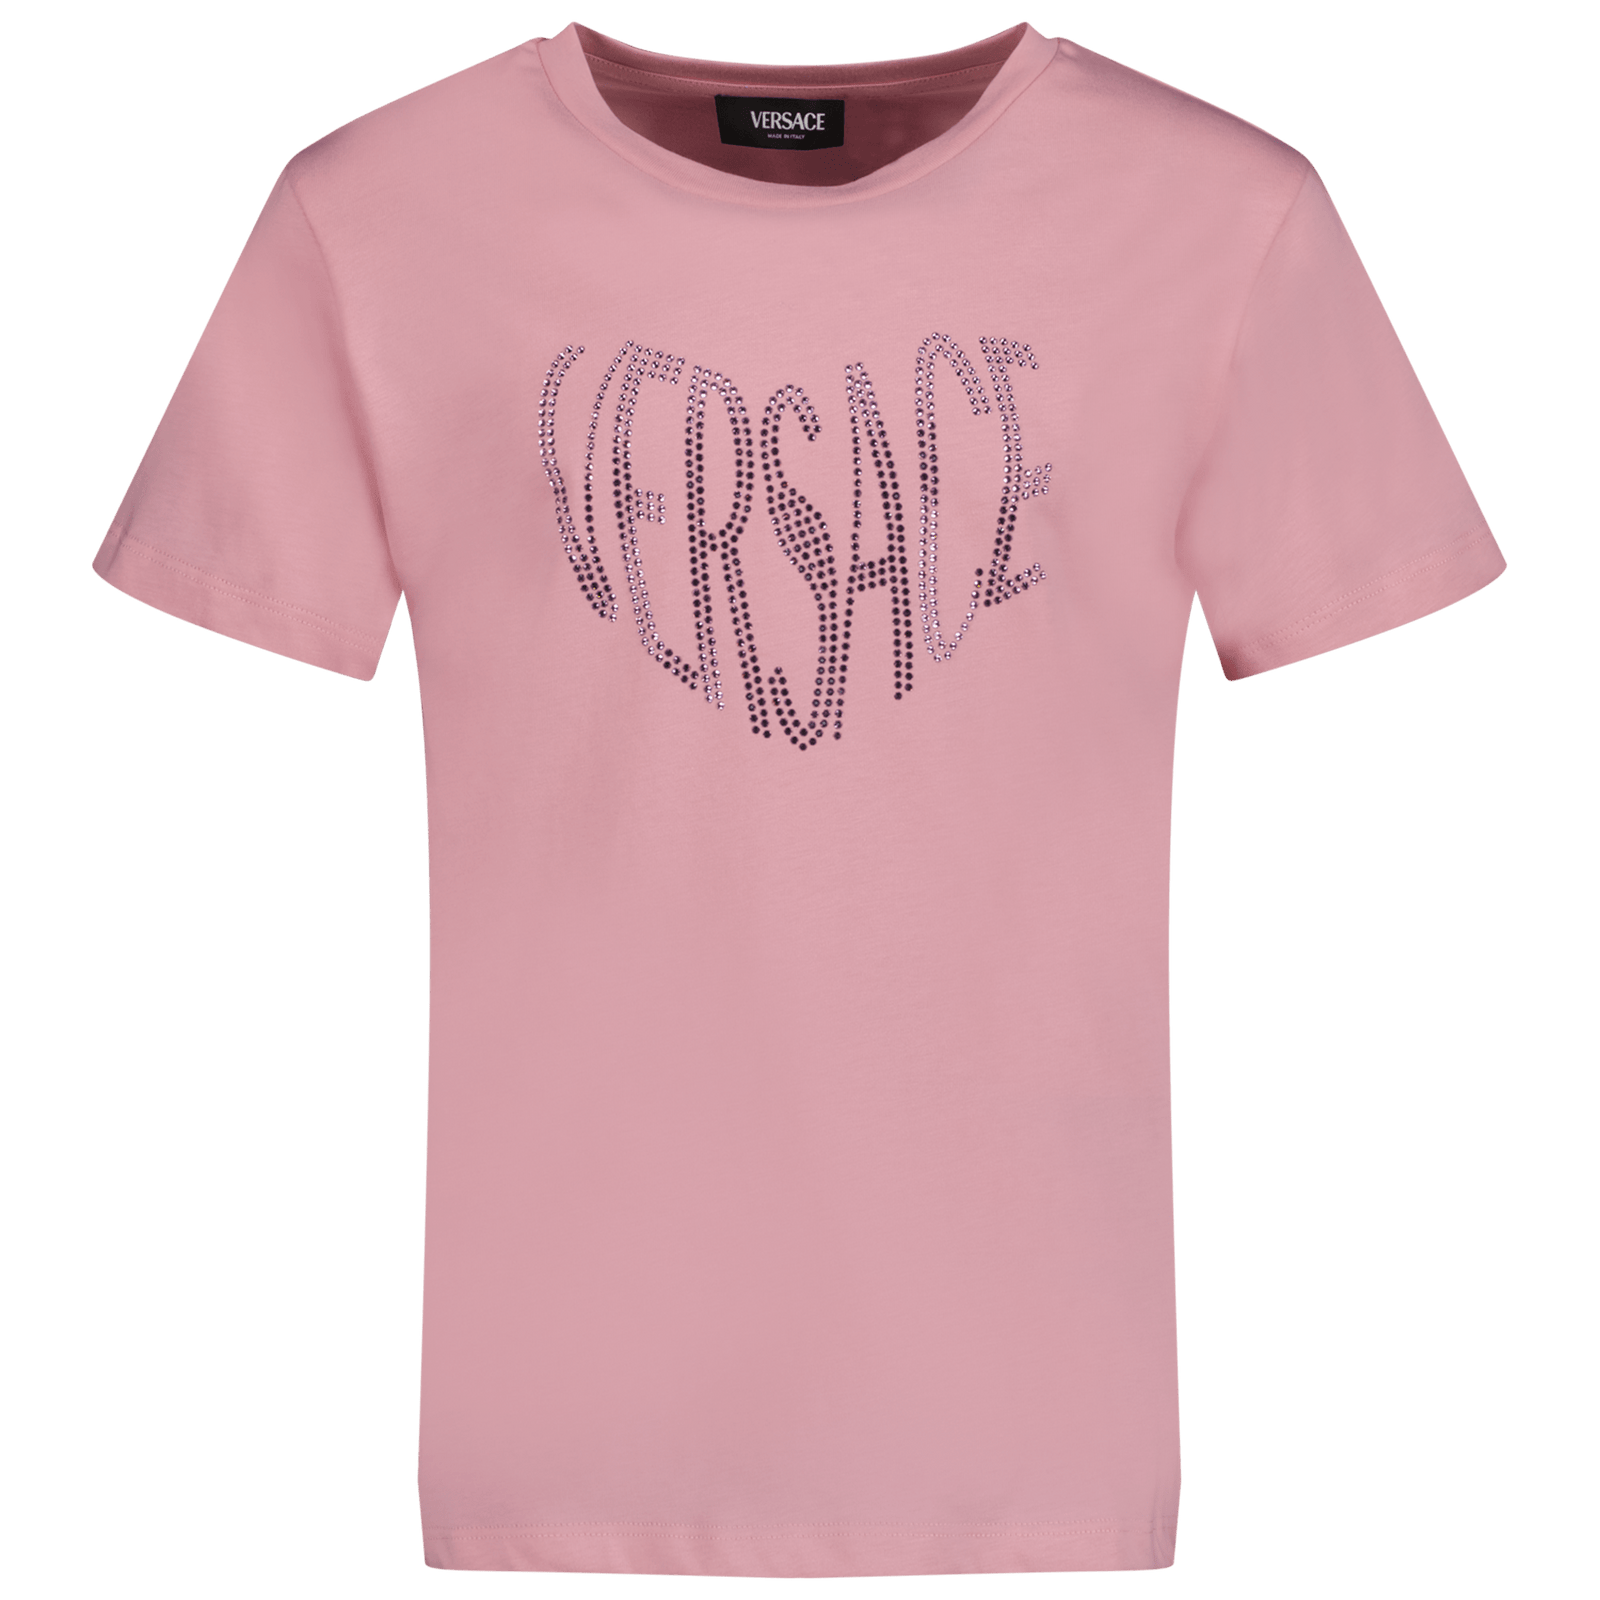 Versace Kids Girls T-Shirt Light Pink